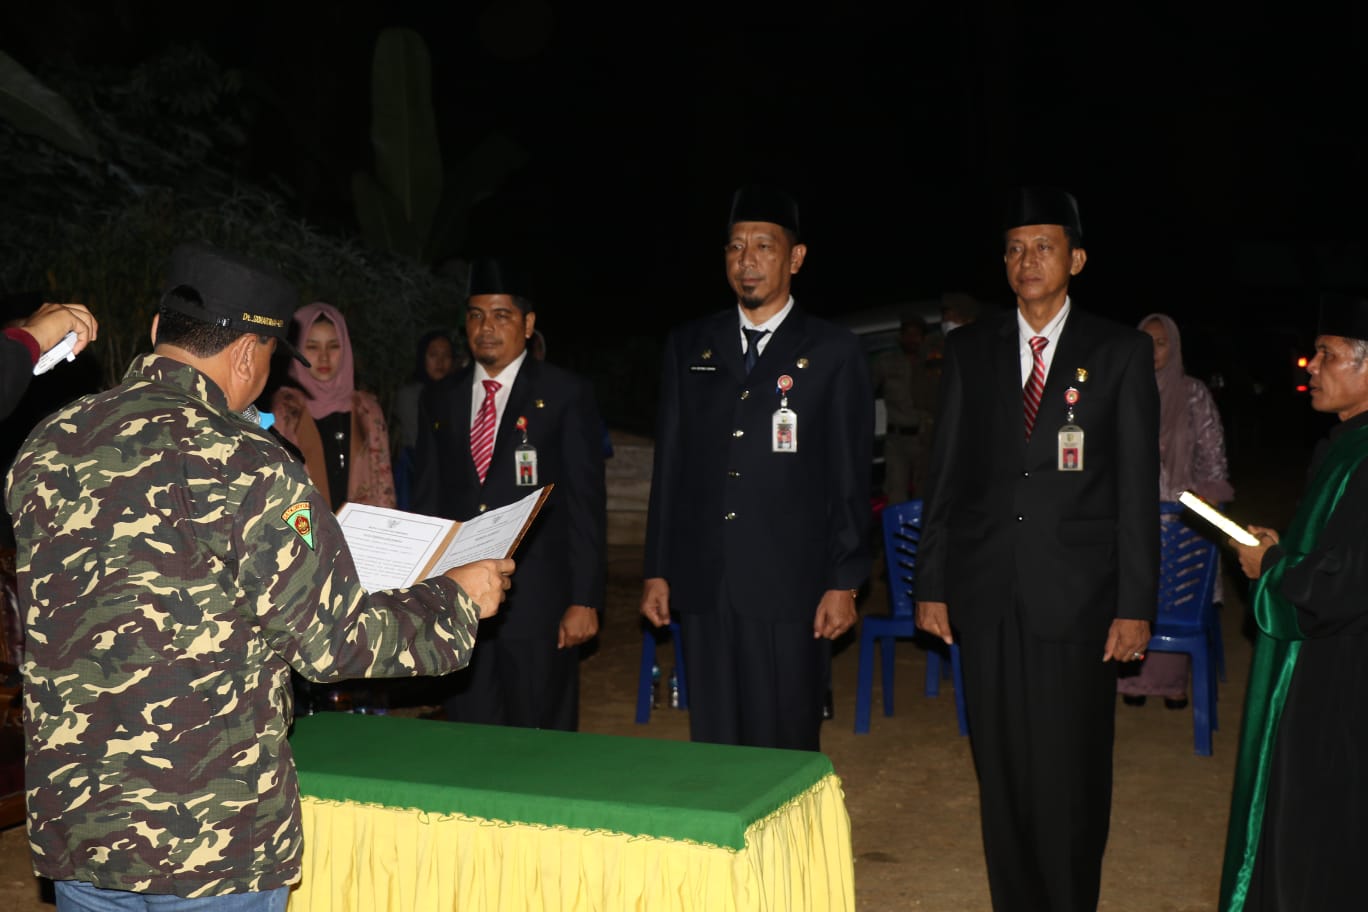 Plt Bupati Kuantan Singingi Suhardiman Amby Melantik Tiga Kepala OPD  Di Kecamatan Pucuk Rantau